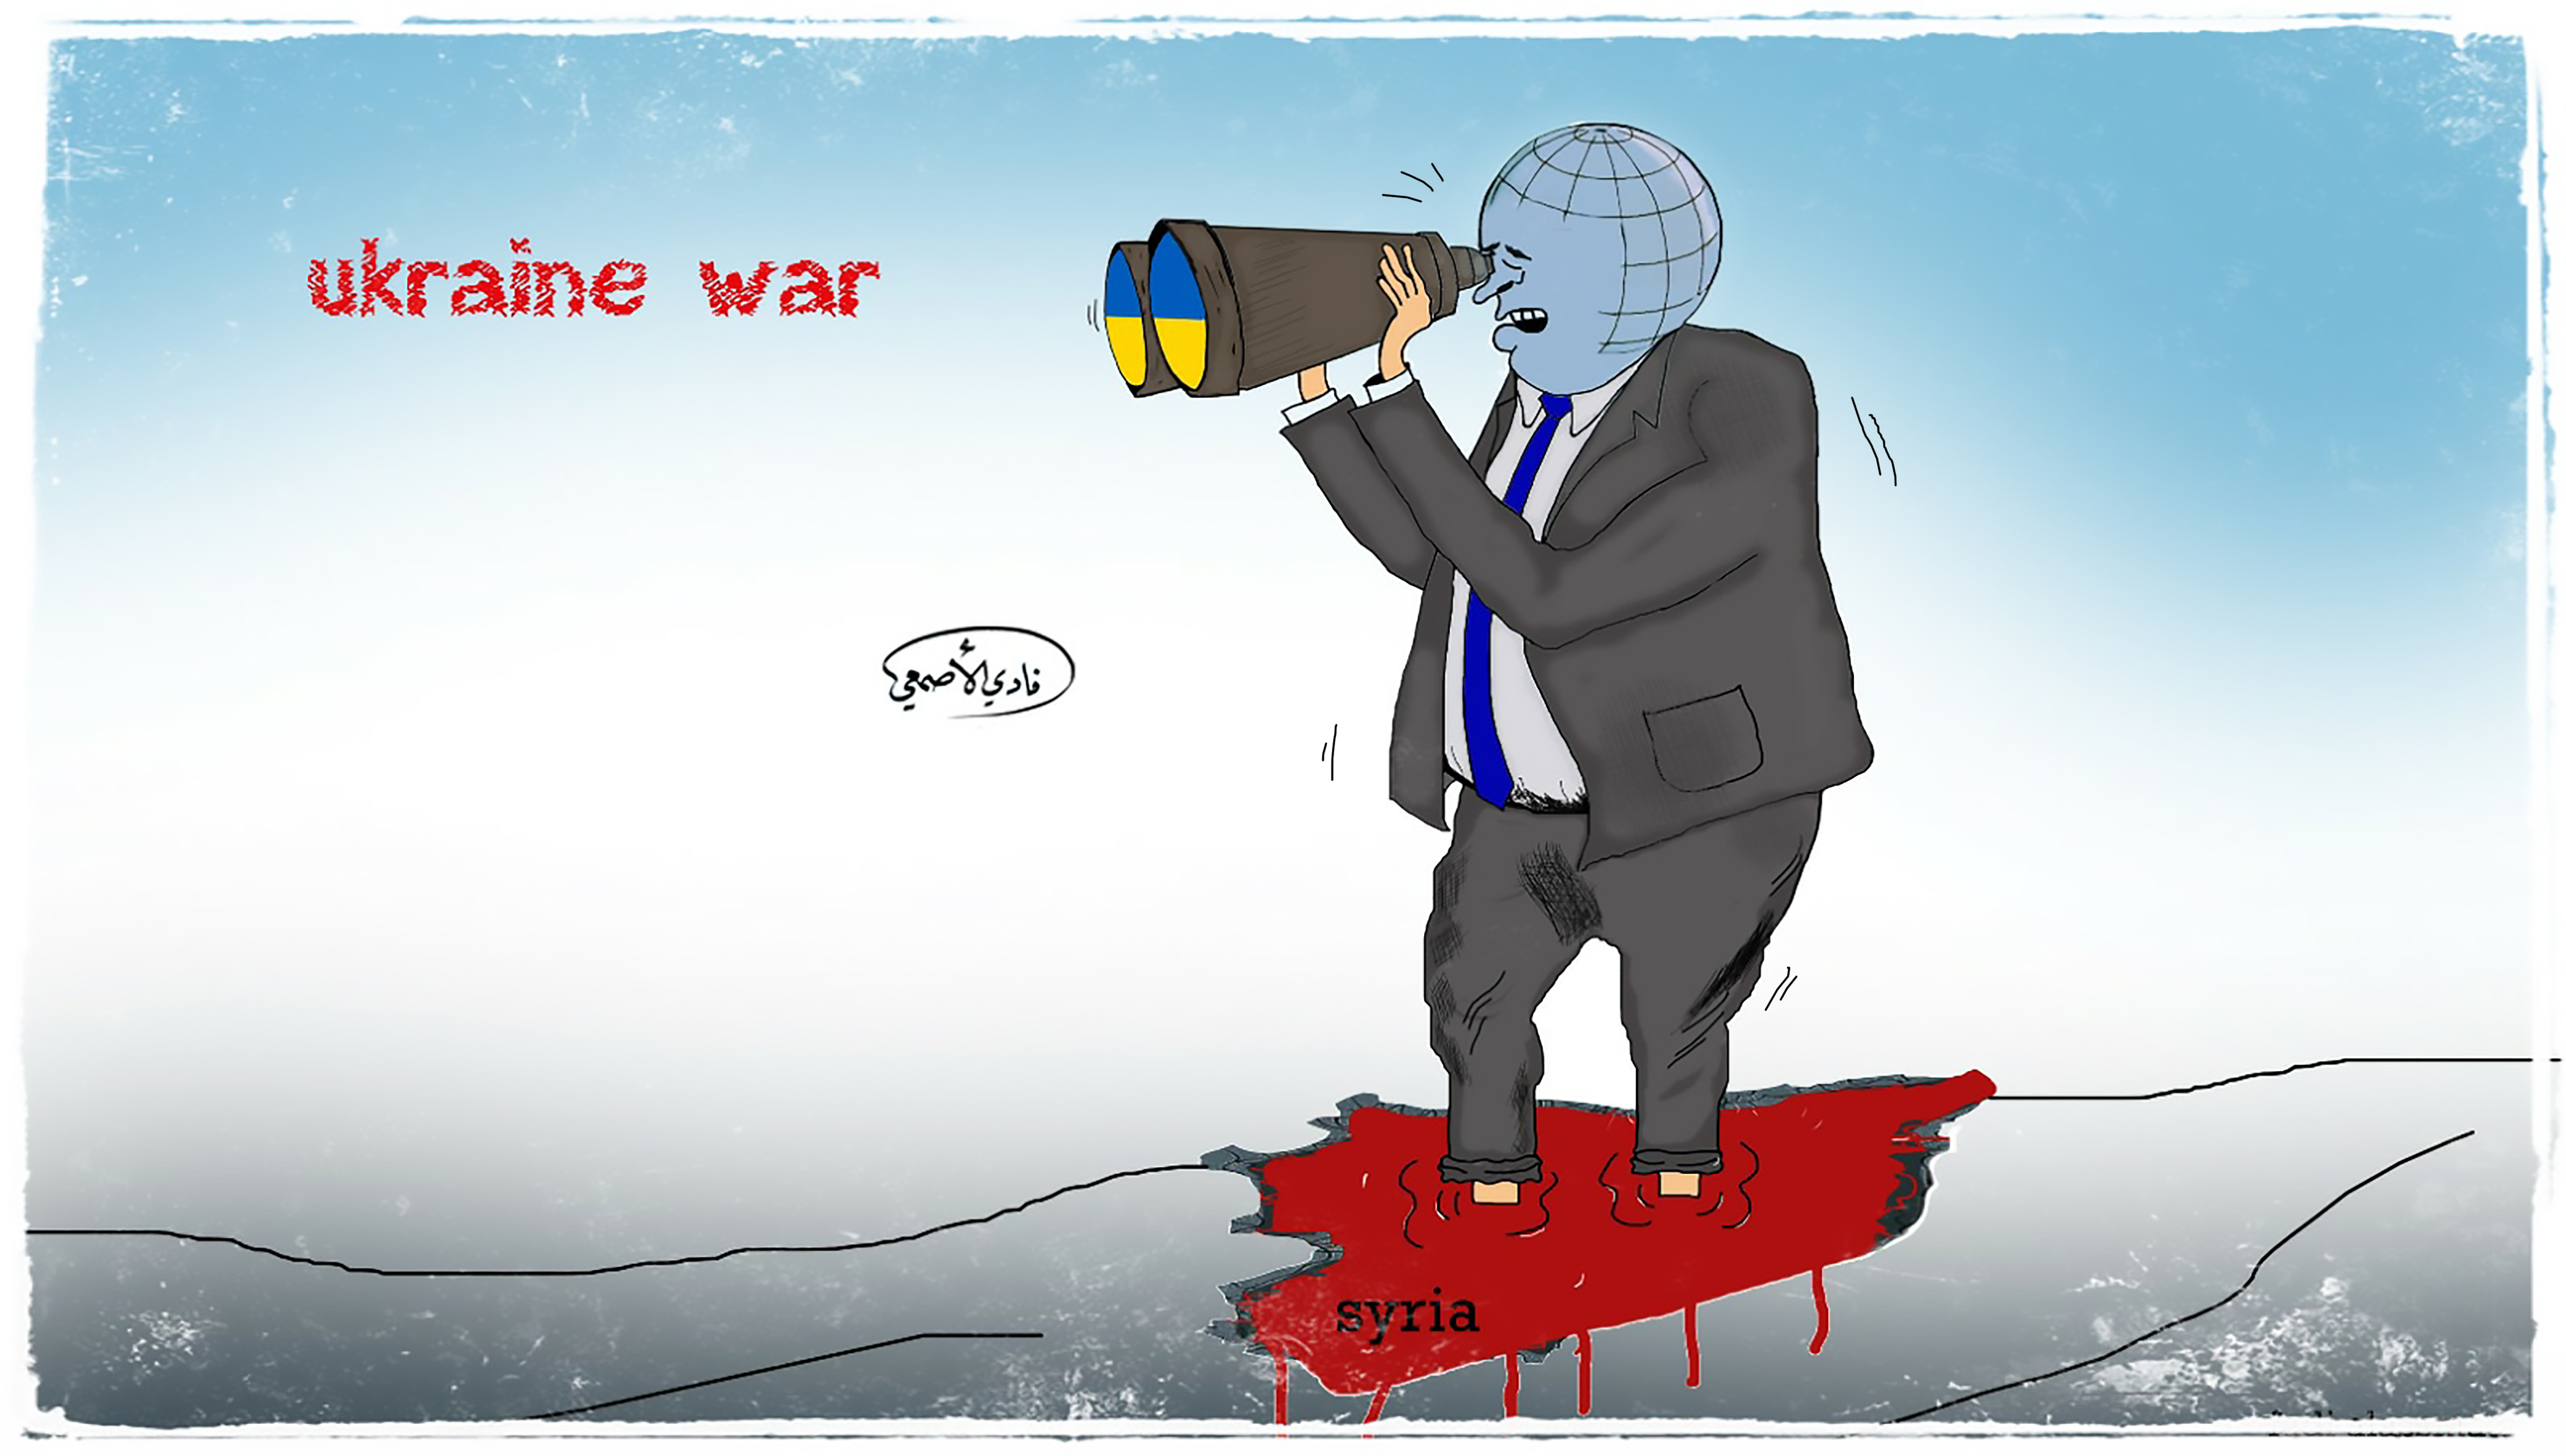 لوحة كاريكاتير بعنوان: "أوكرانيا - سوريا - والمجتمع الدولي" (خاص السوري اليوم)